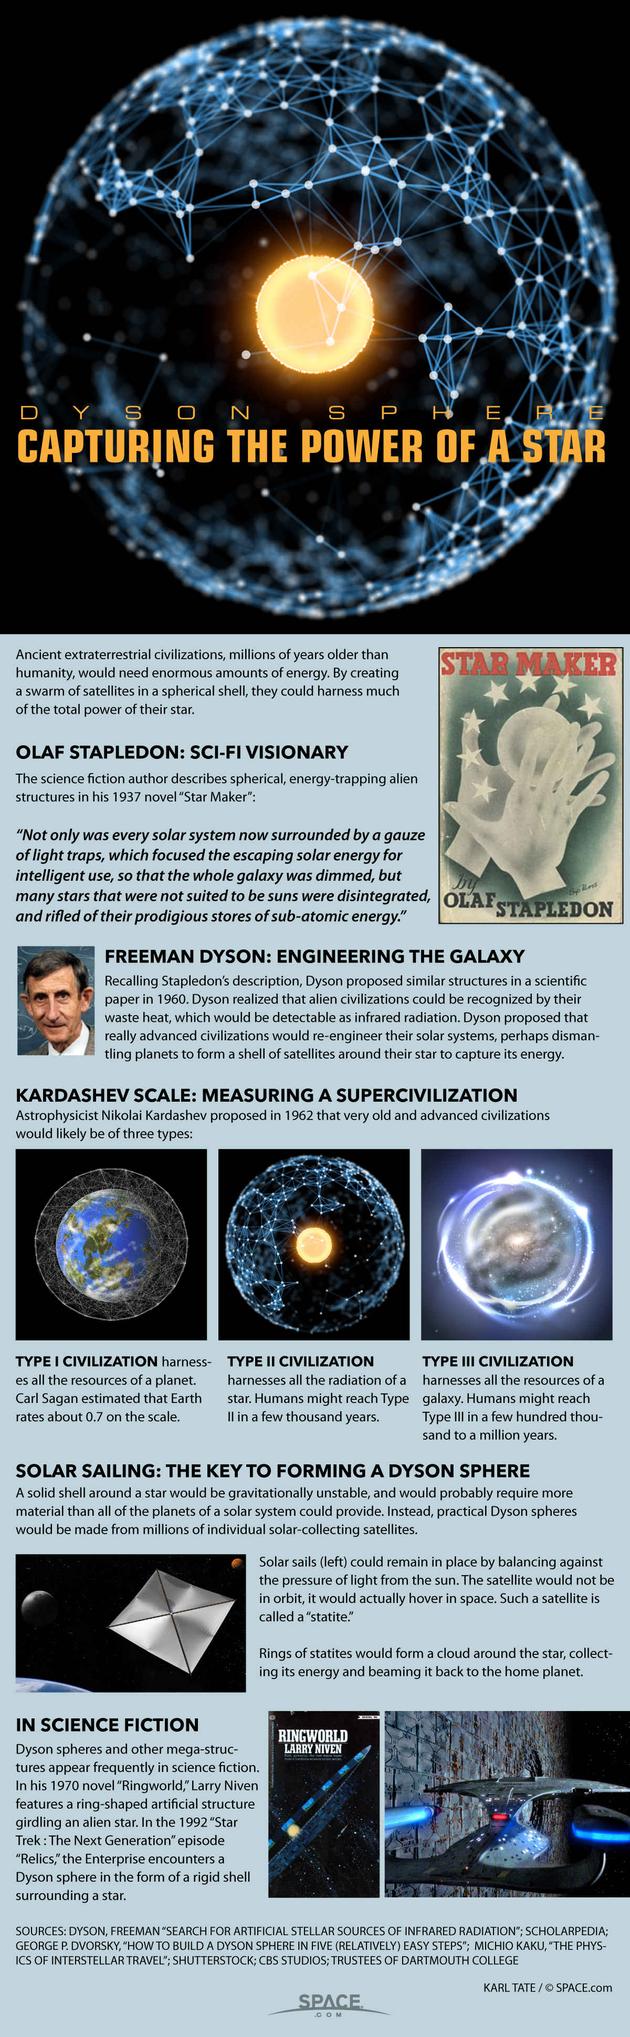 物理学家弗里曼__戴森称，高度文明的外星人通过环绕恒星运行的采集能量的卫星群，可以形成“戴森球(Dyson spheres)”。